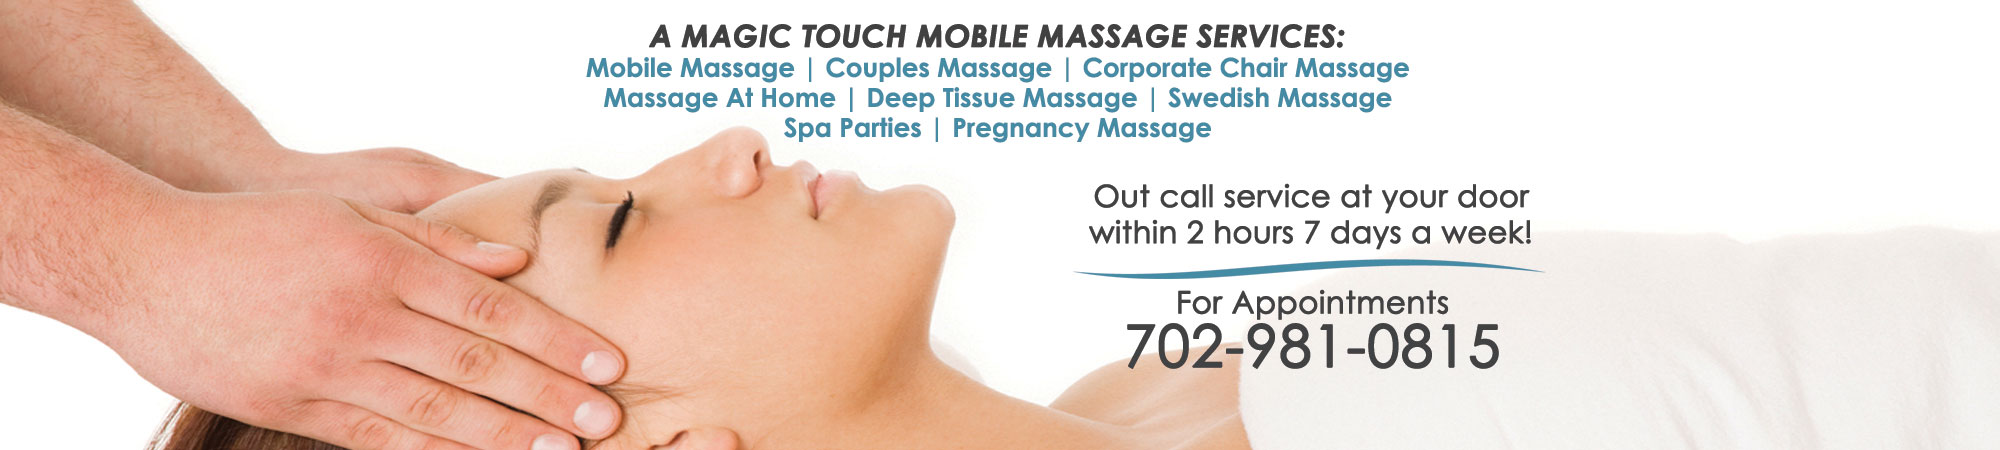 Mobile Massage Las Vegas Services